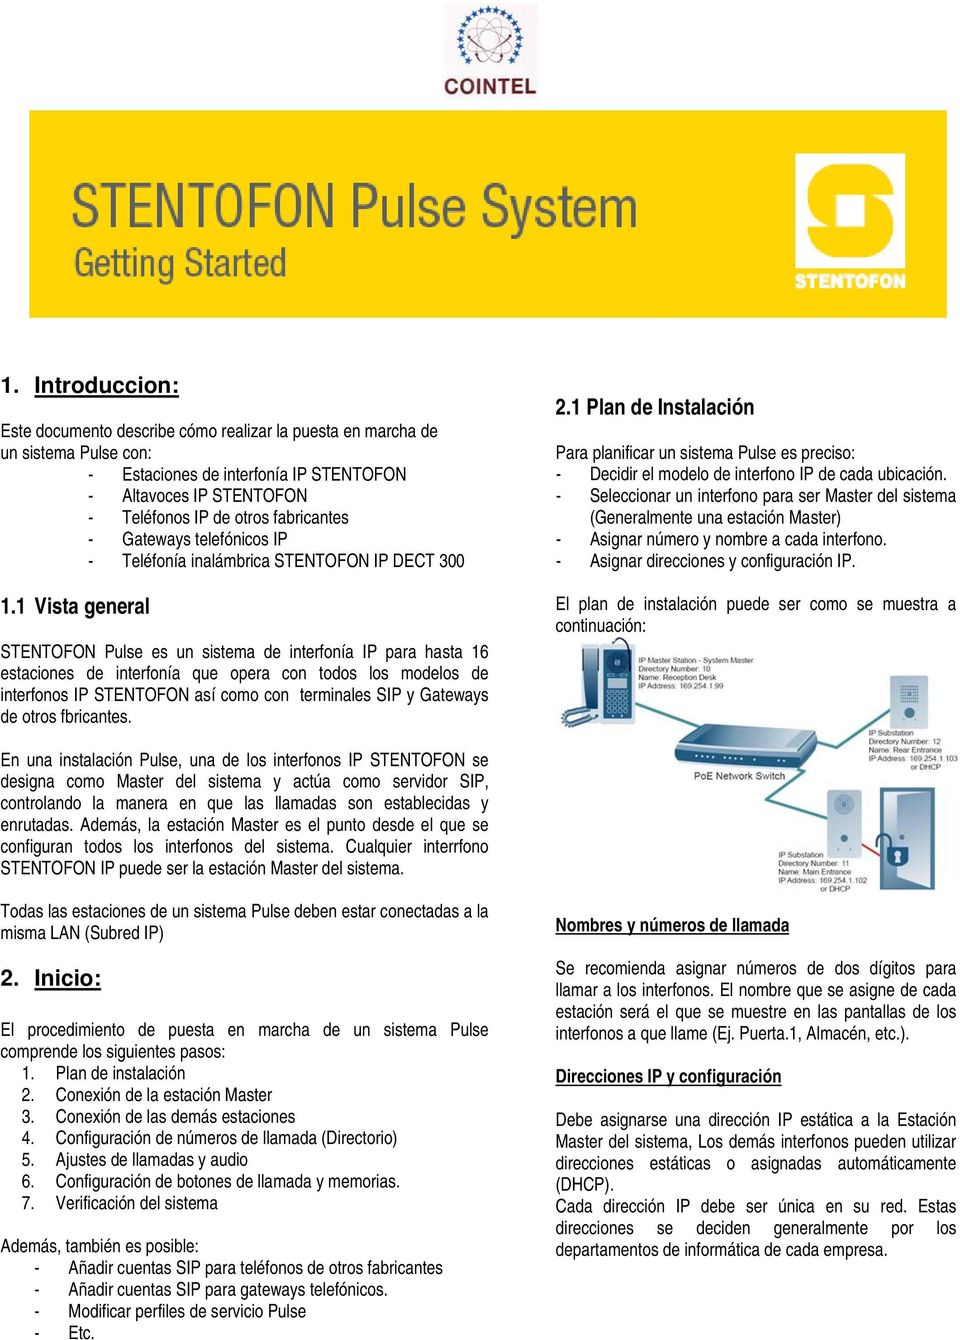 1 Vista general STENTOFON Pulse es un sistema de interfonía IP para hasta 16 estaciones de interfonía que opera con todos los modelos de interfonos IP STENTOFON así como con terminales SIP y Gateways